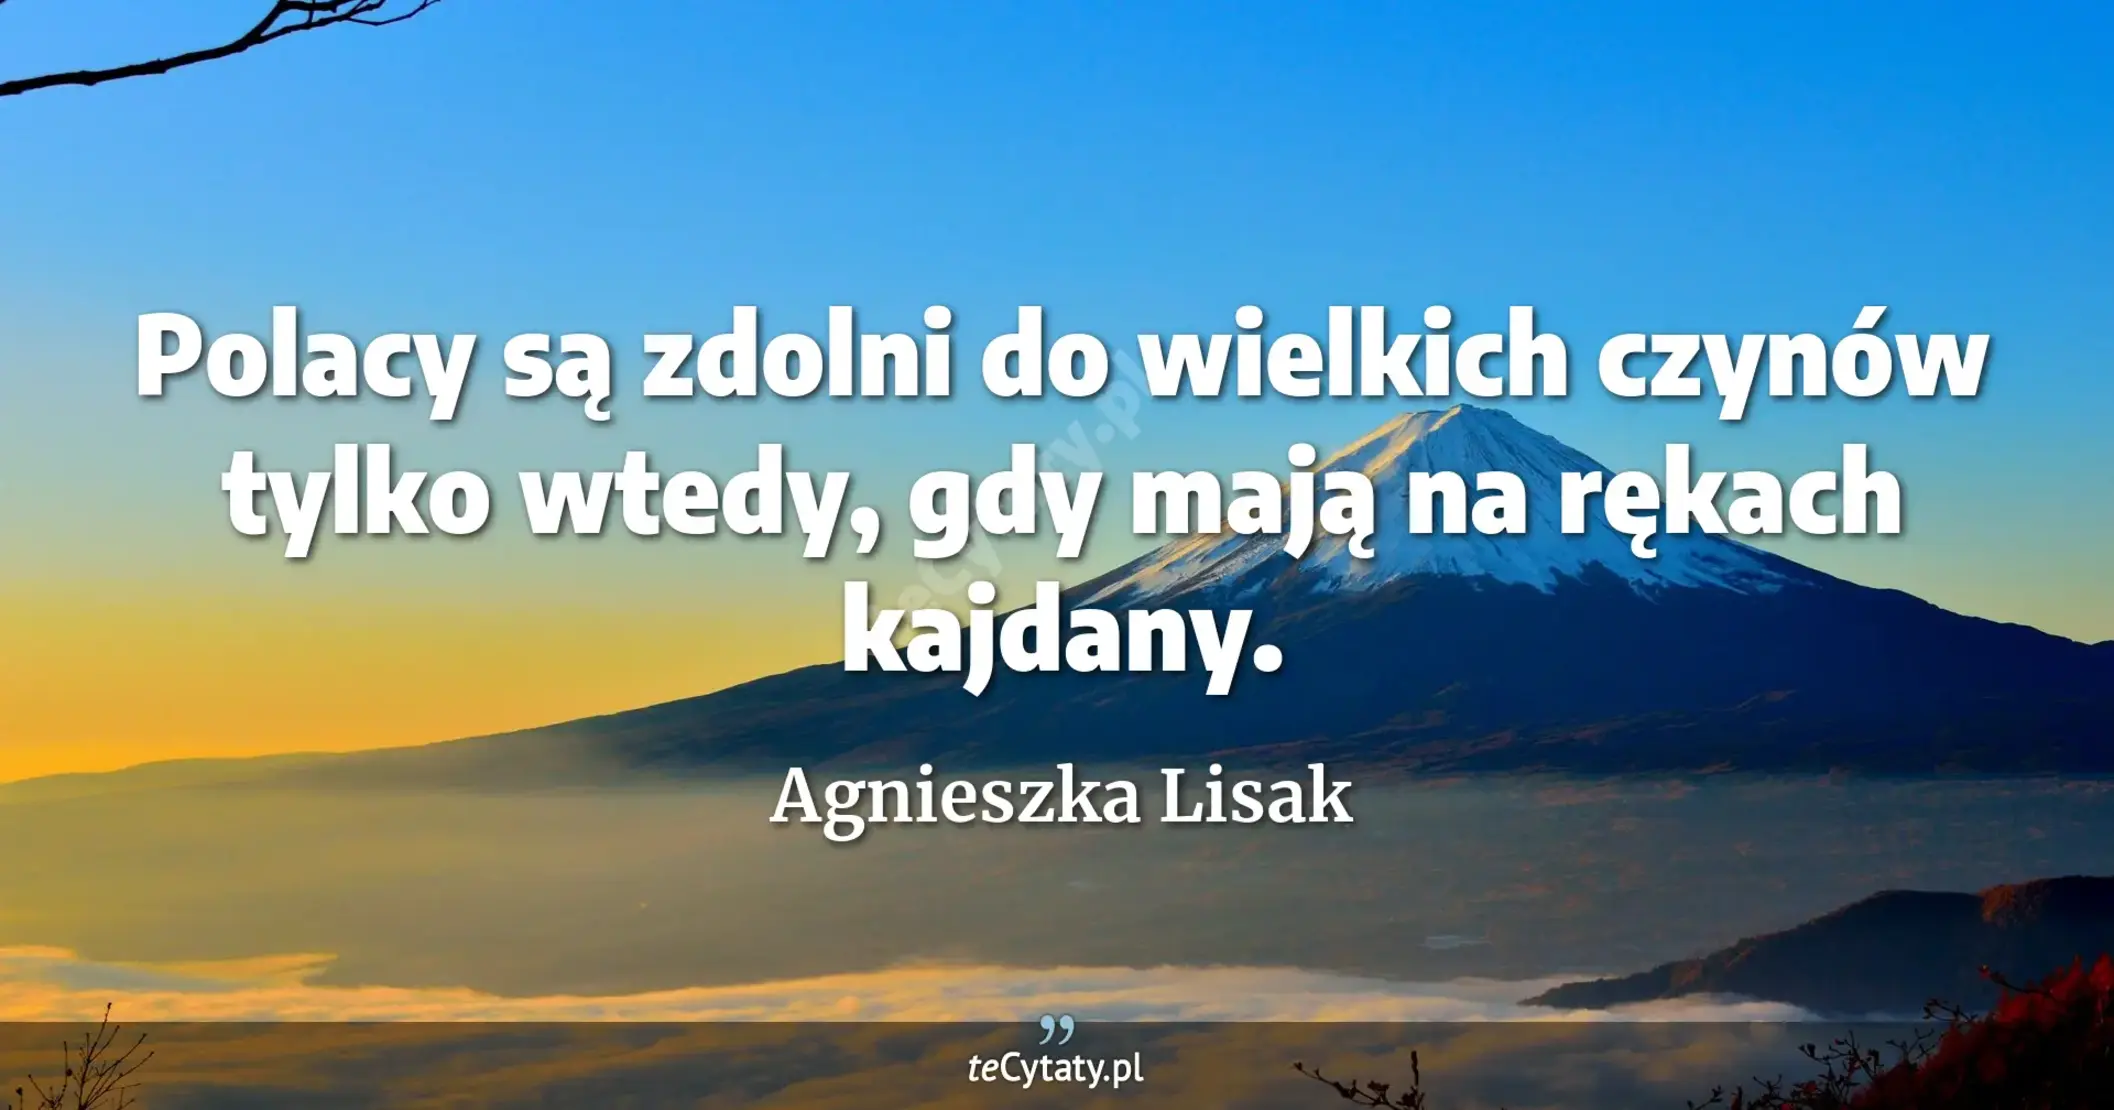 Polacy są zdolni do wielkich czynów tylko wtedy, gdy mają na rękach kajdany. - Agnieszka Lisak